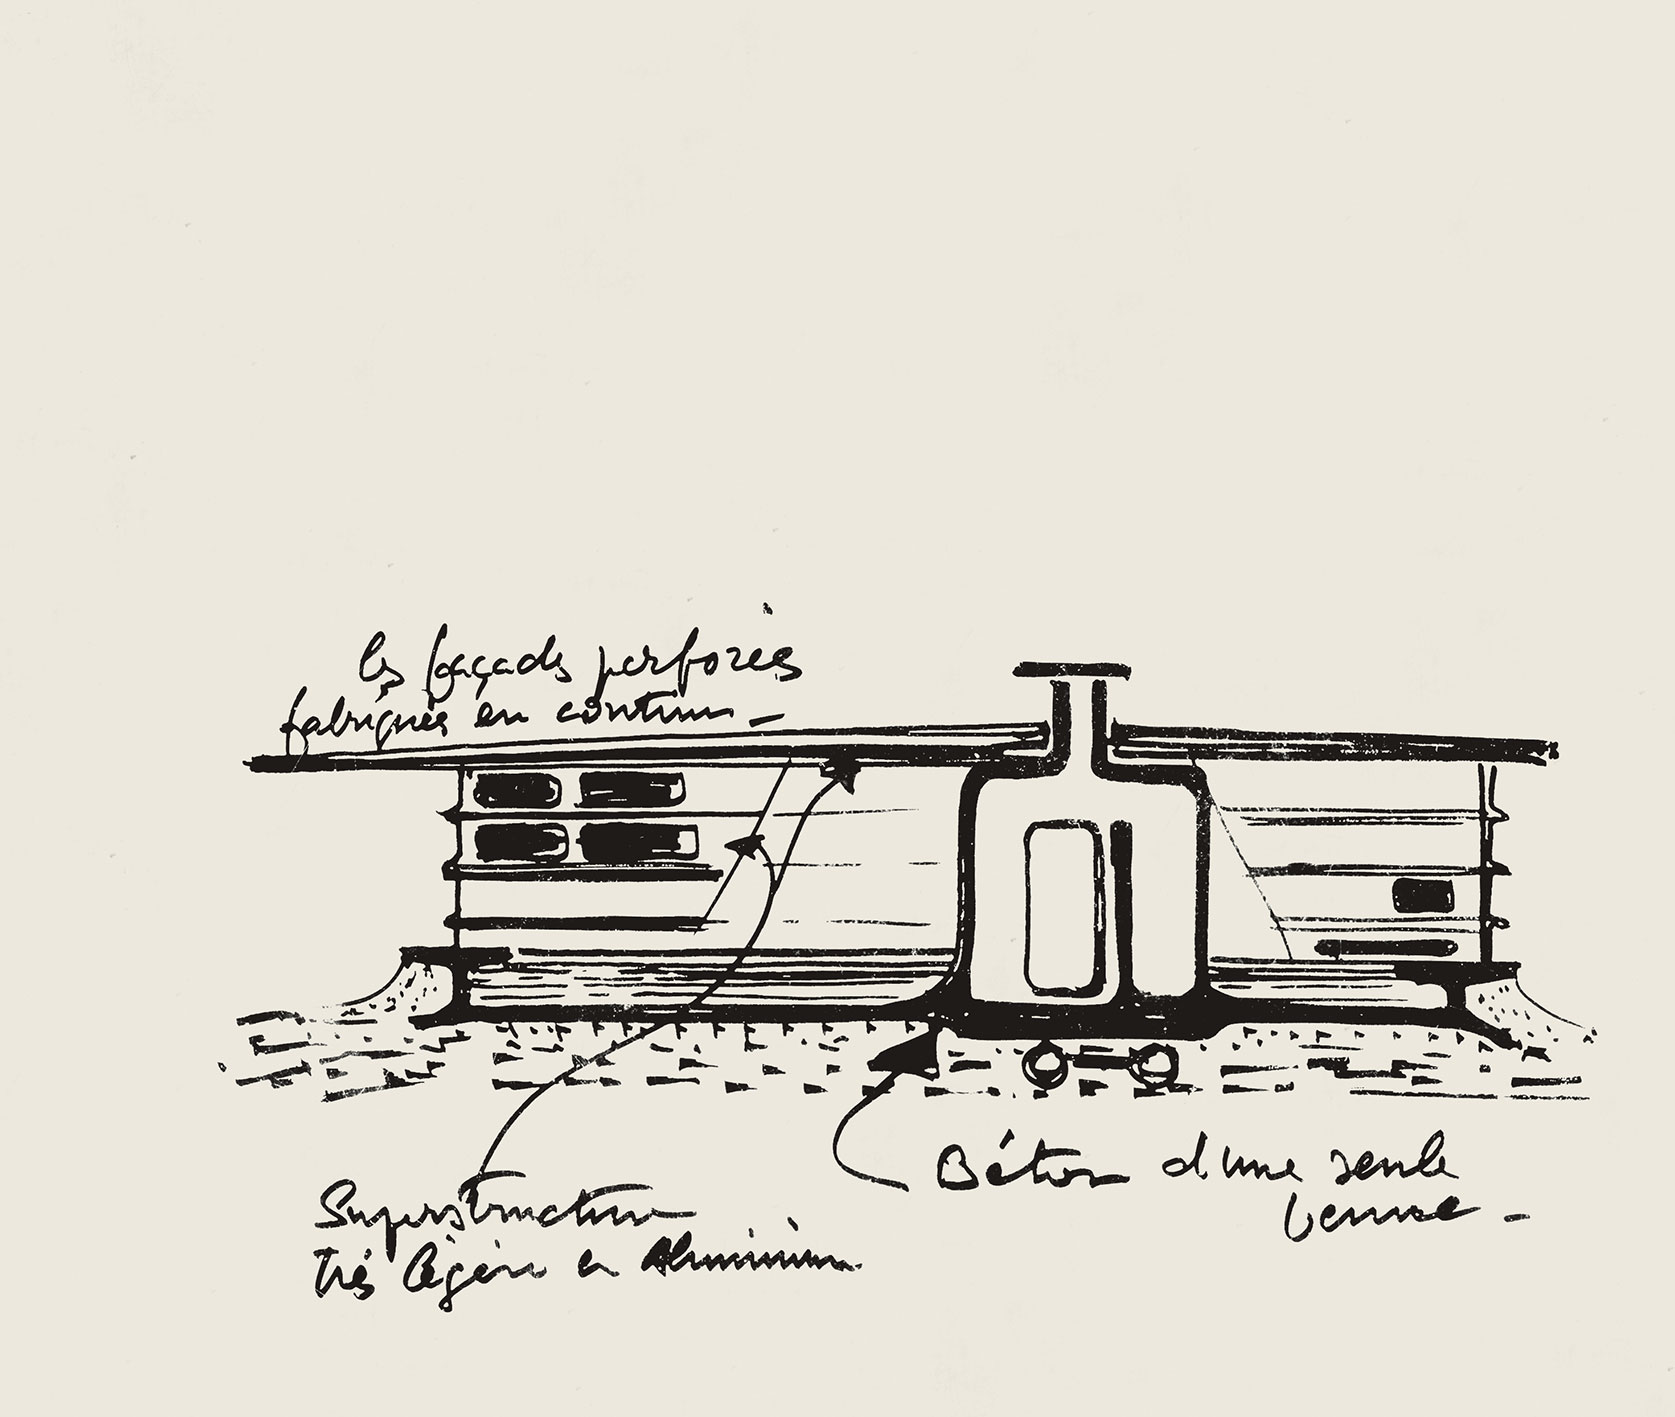 Étude pour la maison Alba (aluminium, béton armé), 1952-1953 (M. Silvy, arch. stagiaire).